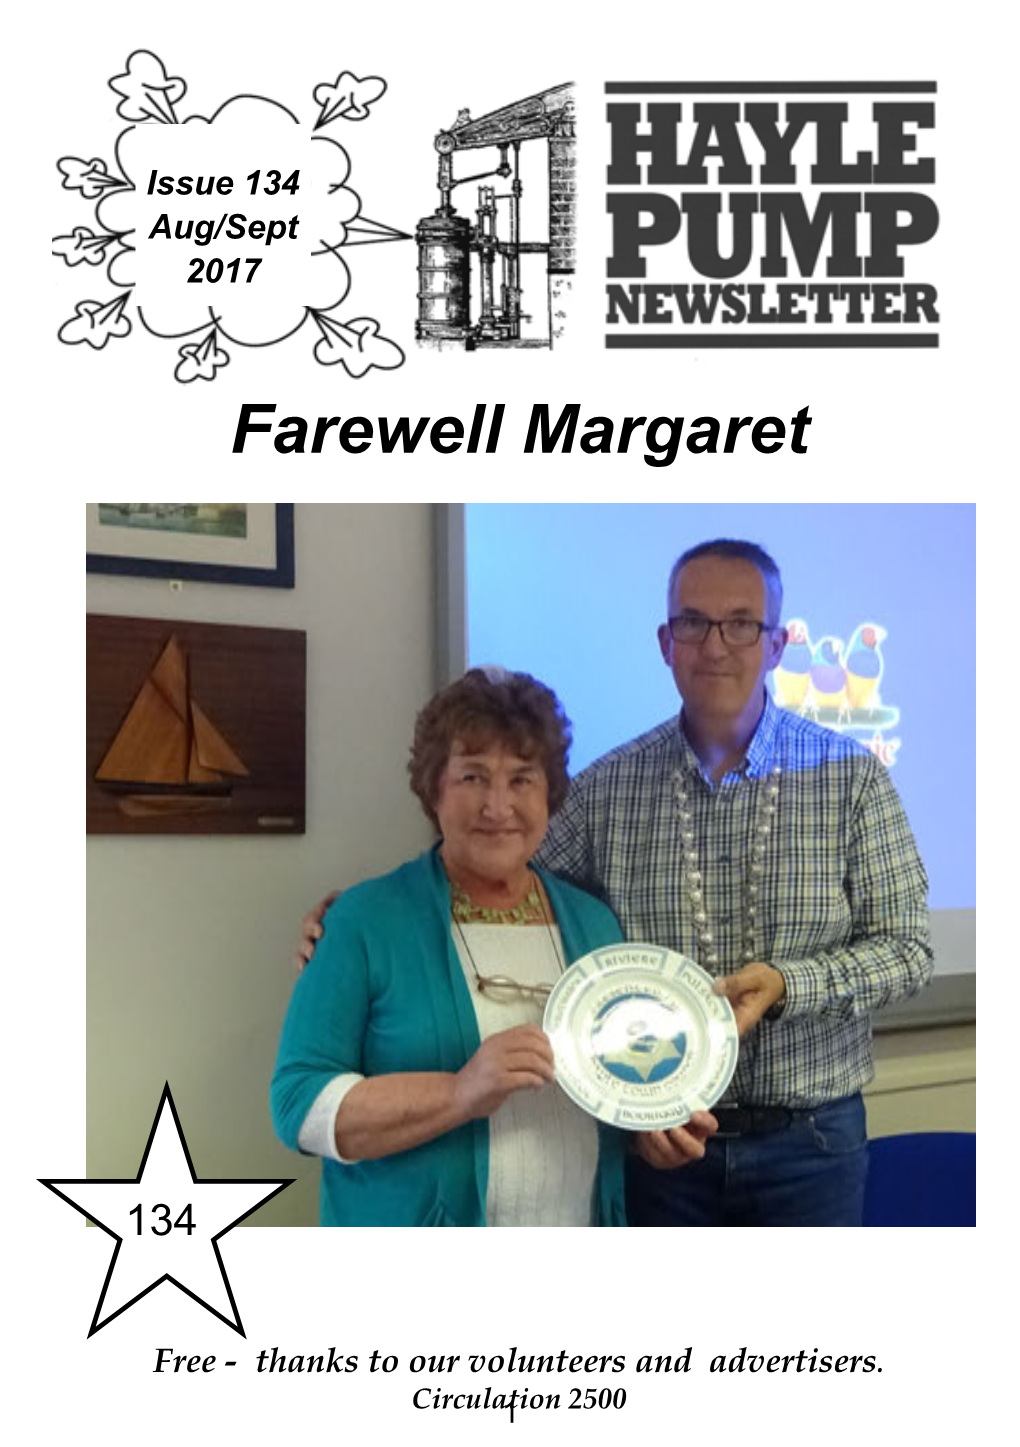 Farewell Margaret